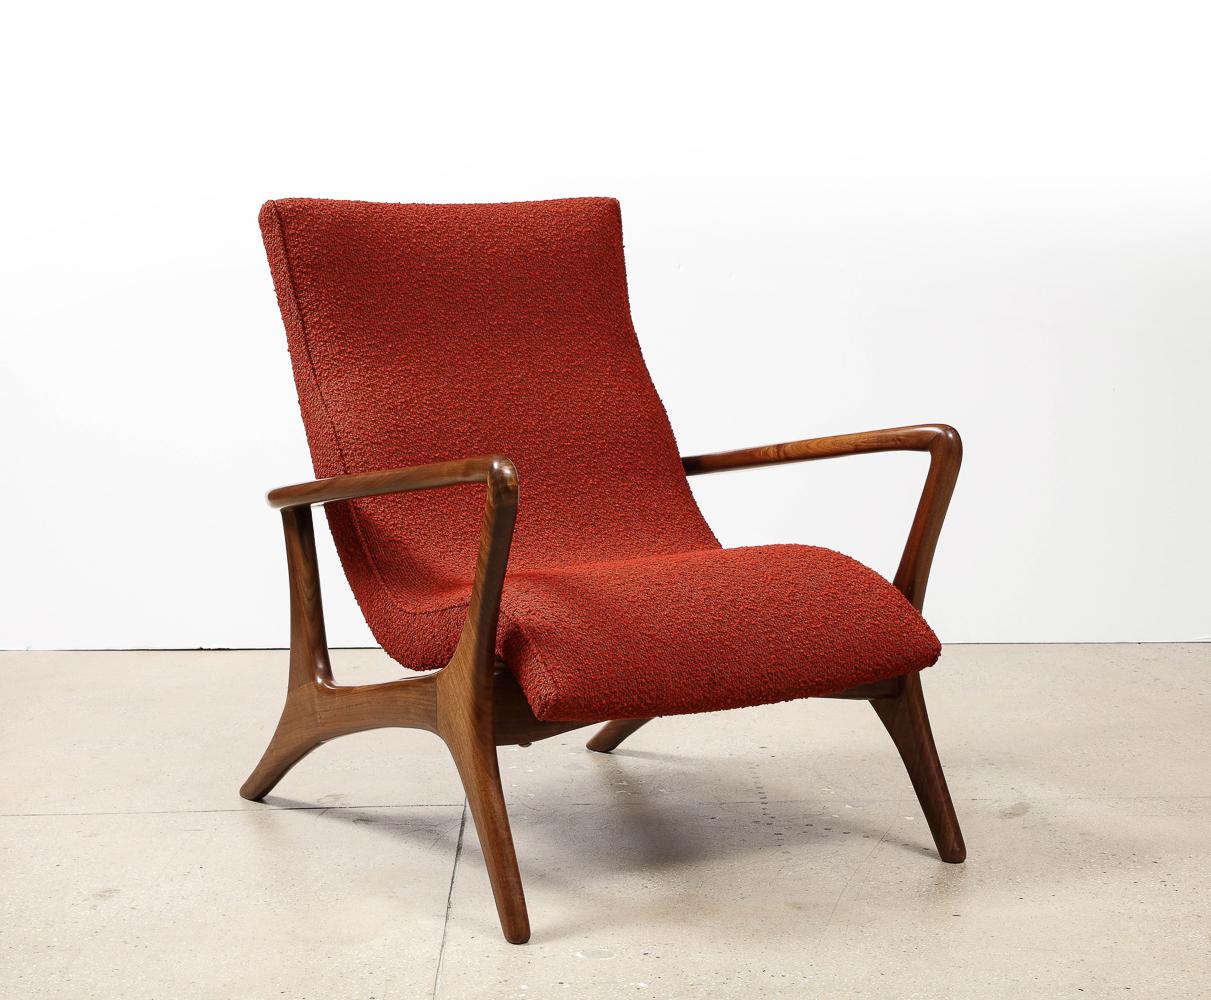 Seltener Contour Lounge Chair von Vladimir Kagan. Nussbaum, Polsterung. Eine klassische Form A von Kagan mit skulpturalem Rahmen aus Nussbaumholz. Entworfen 1953, dieses Exemplar wurde um 1970 hergestellt.